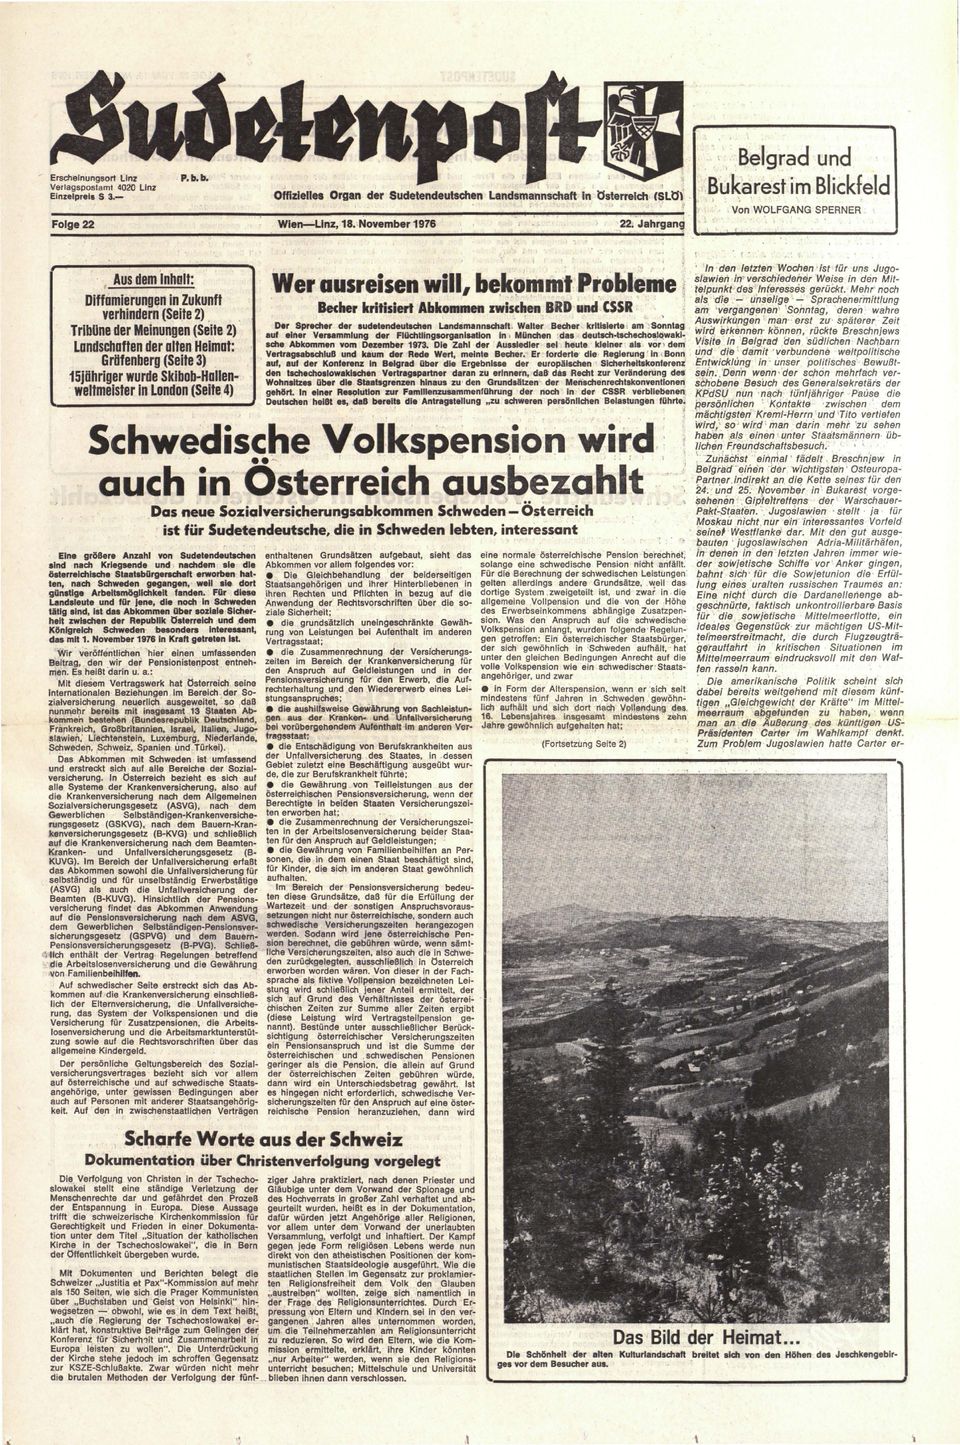 November 1976 Folge 22 Aus dem Inhalt: Diffamierungen in Zukunft verhindern (Seite 2) Tribüne der Meinungen (Seite 2) Landschaften der alten Heimat: Gräfenberg (Seife 3) 15jähriger wurde